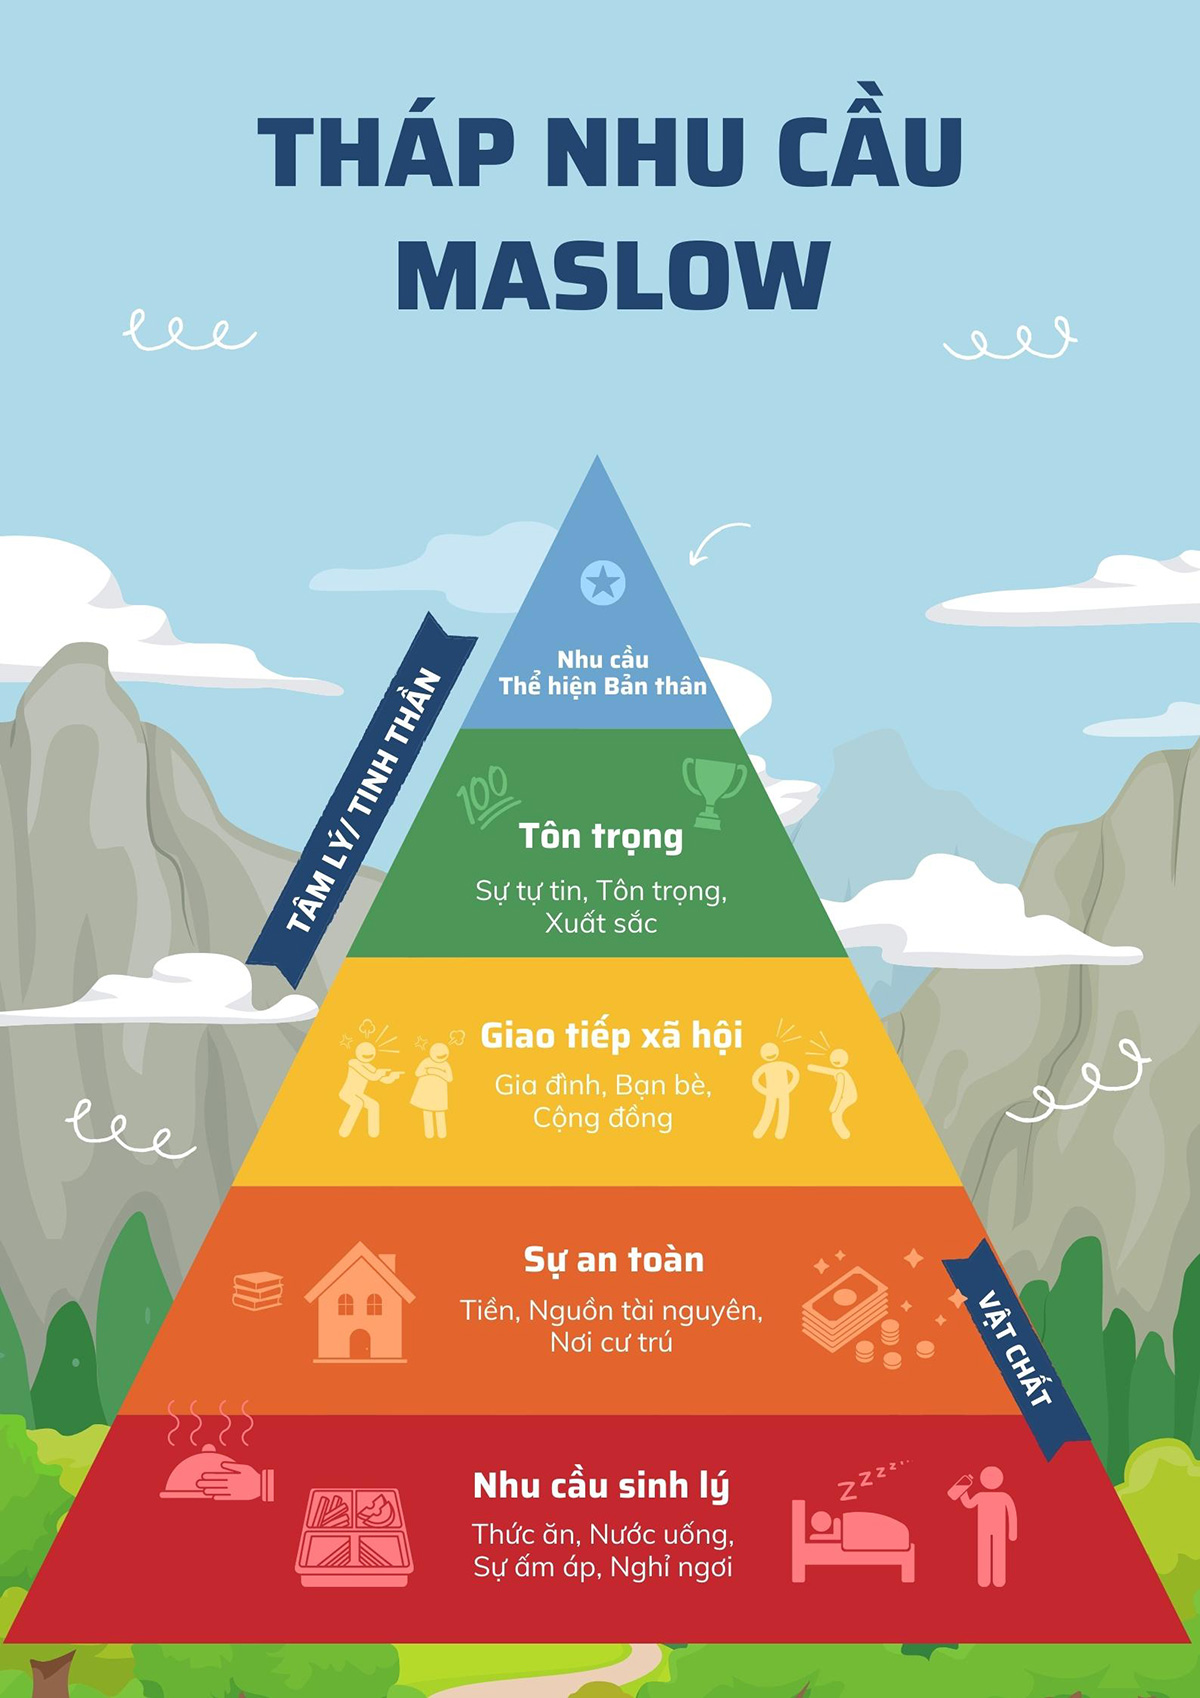 Tháp nhu cầu Maslow là gì? Ứng dụng nhu cầu con người